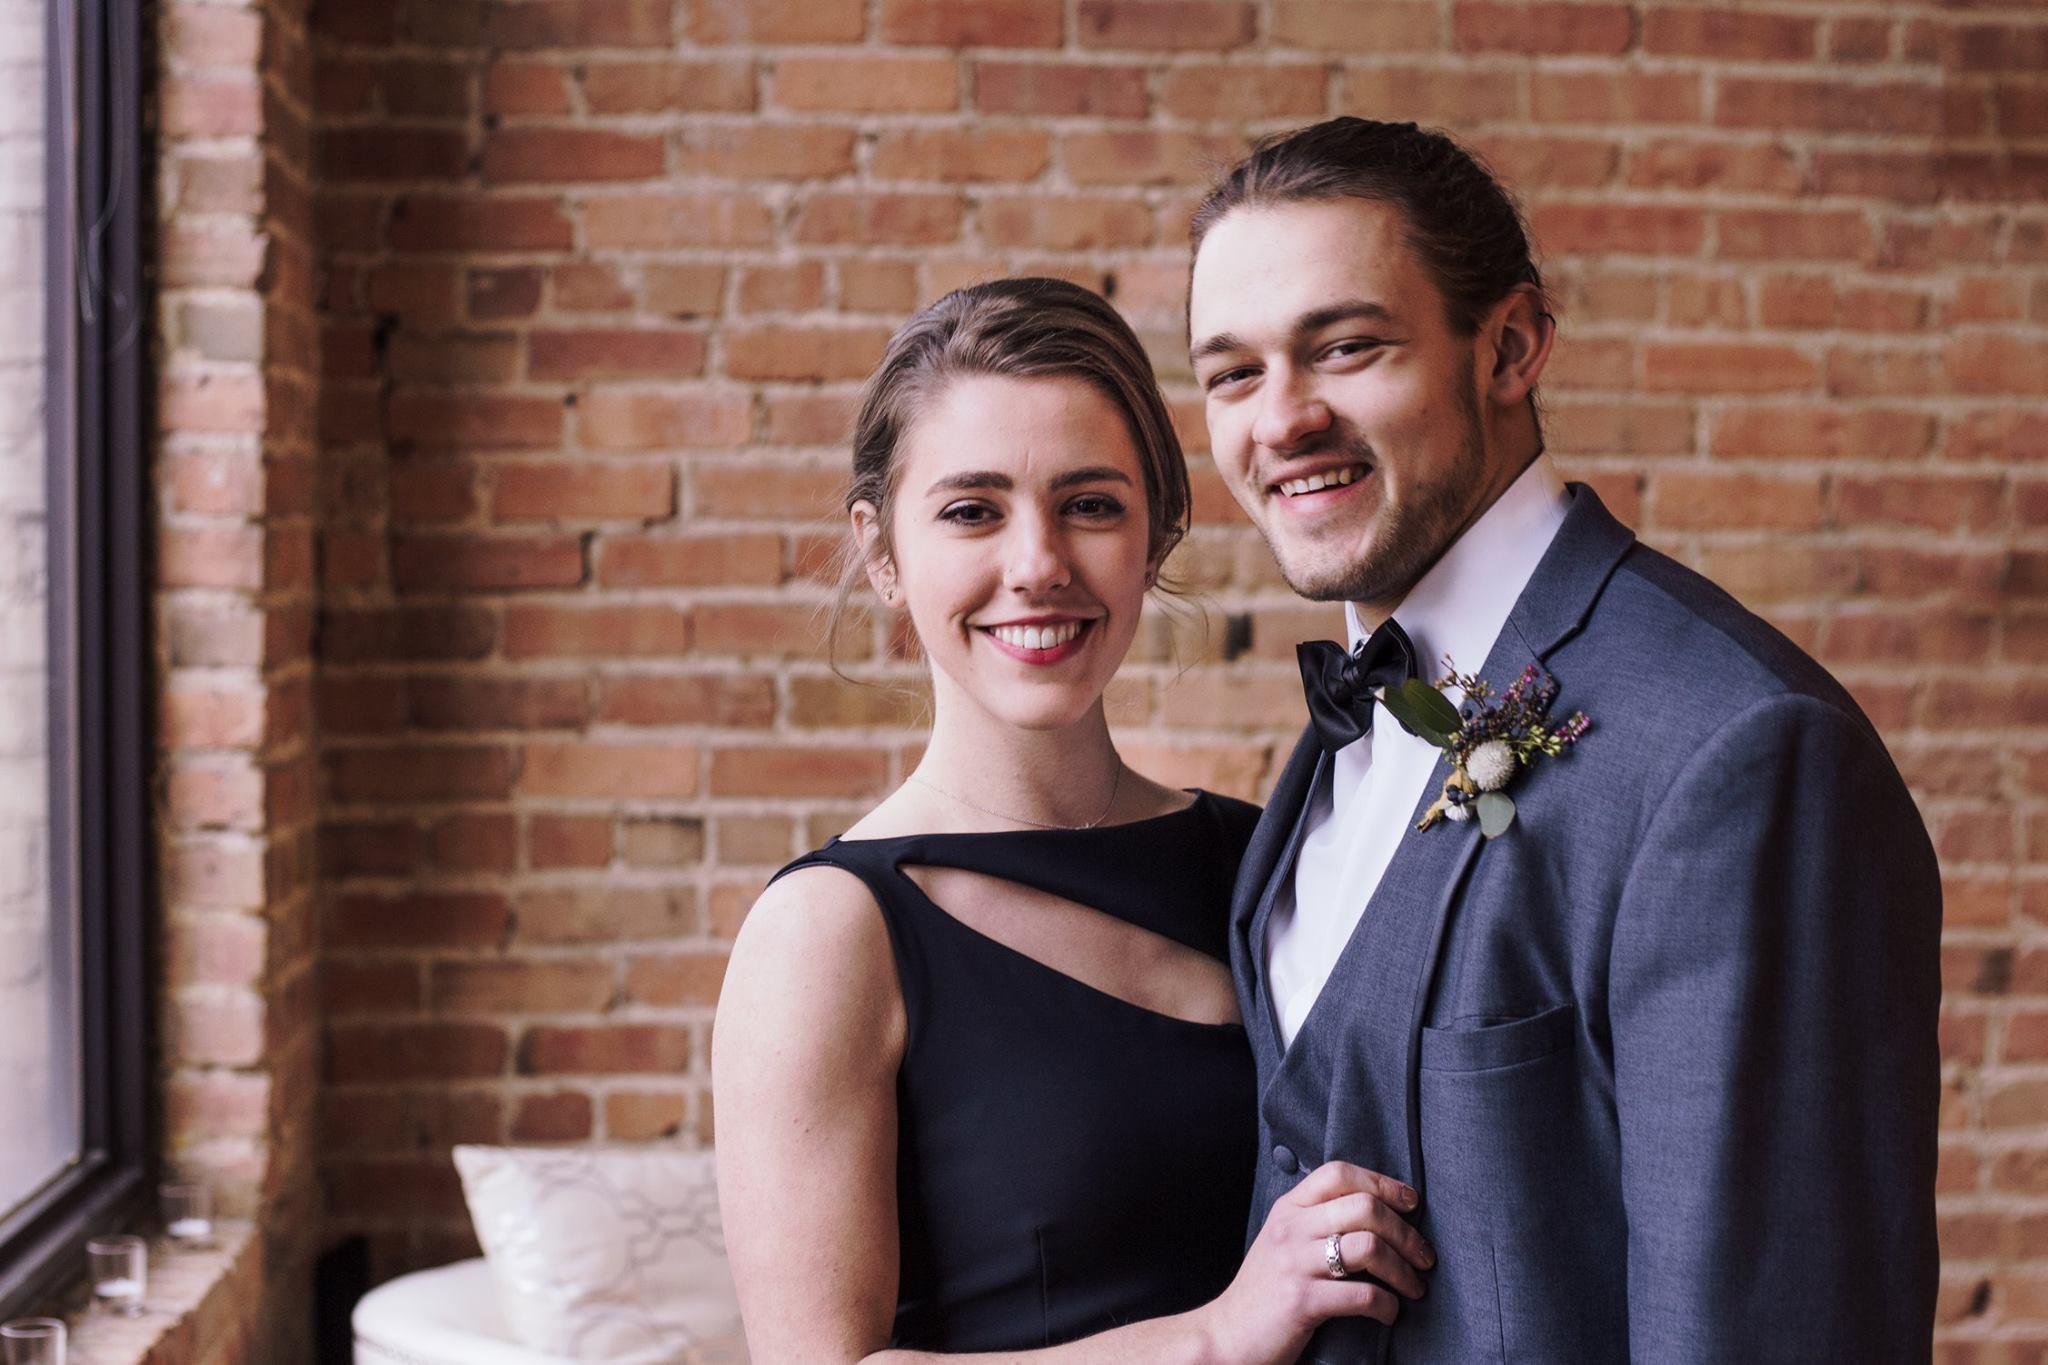 The Wedding Website of Lauren Norton and Justin Miller